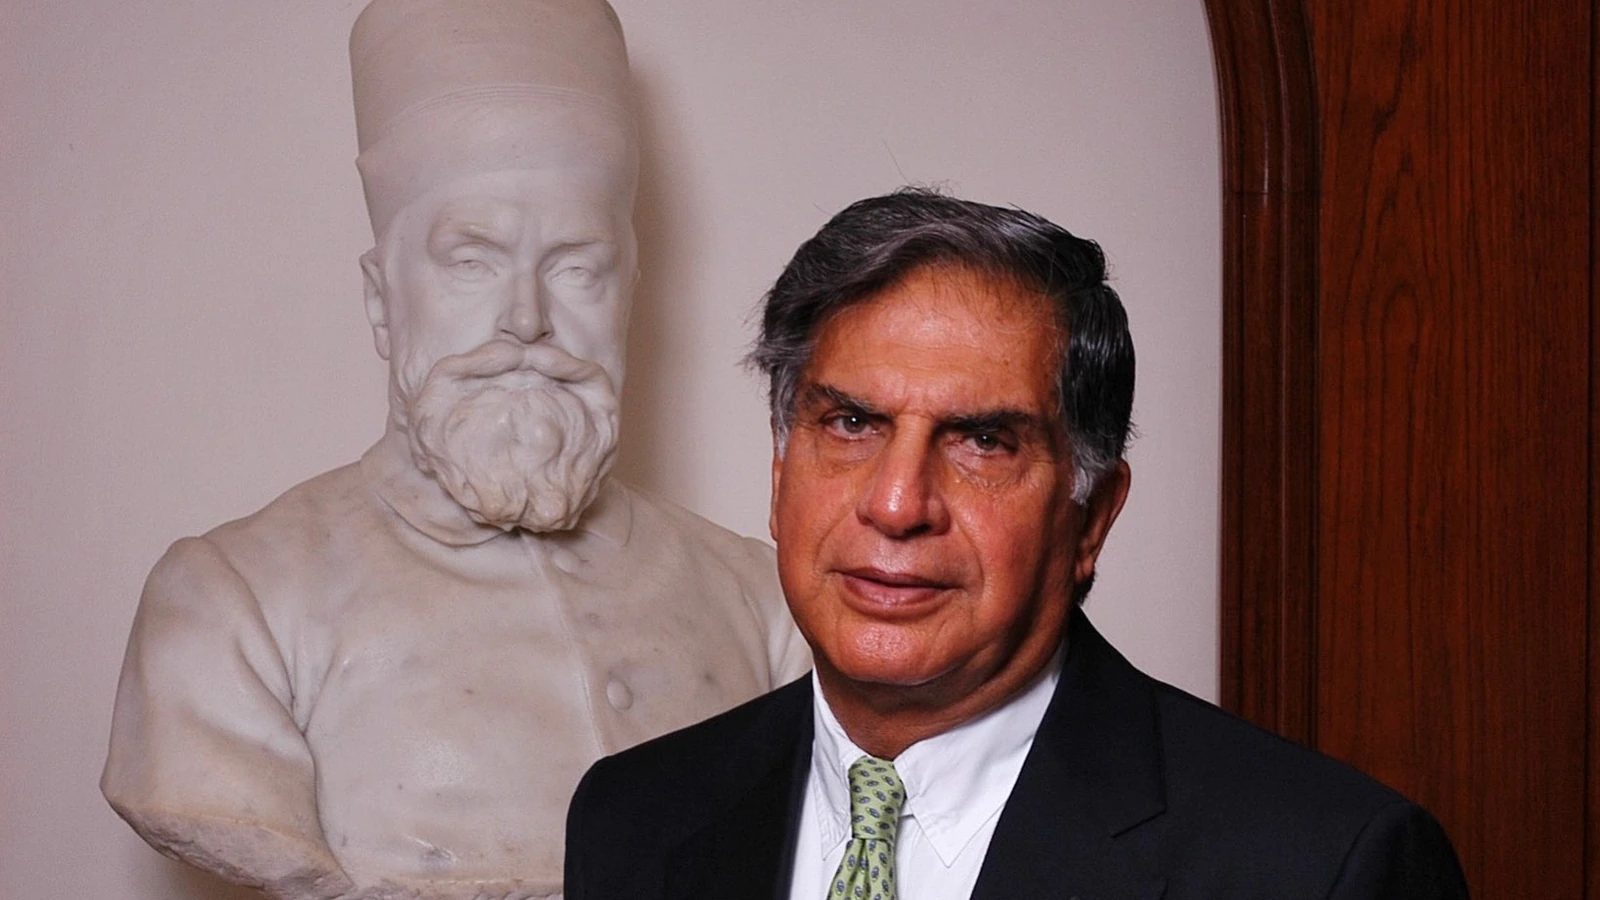 Industrialist Ratan Tata pays tribute to Jamsetji Tata on 183rd birth anniversary